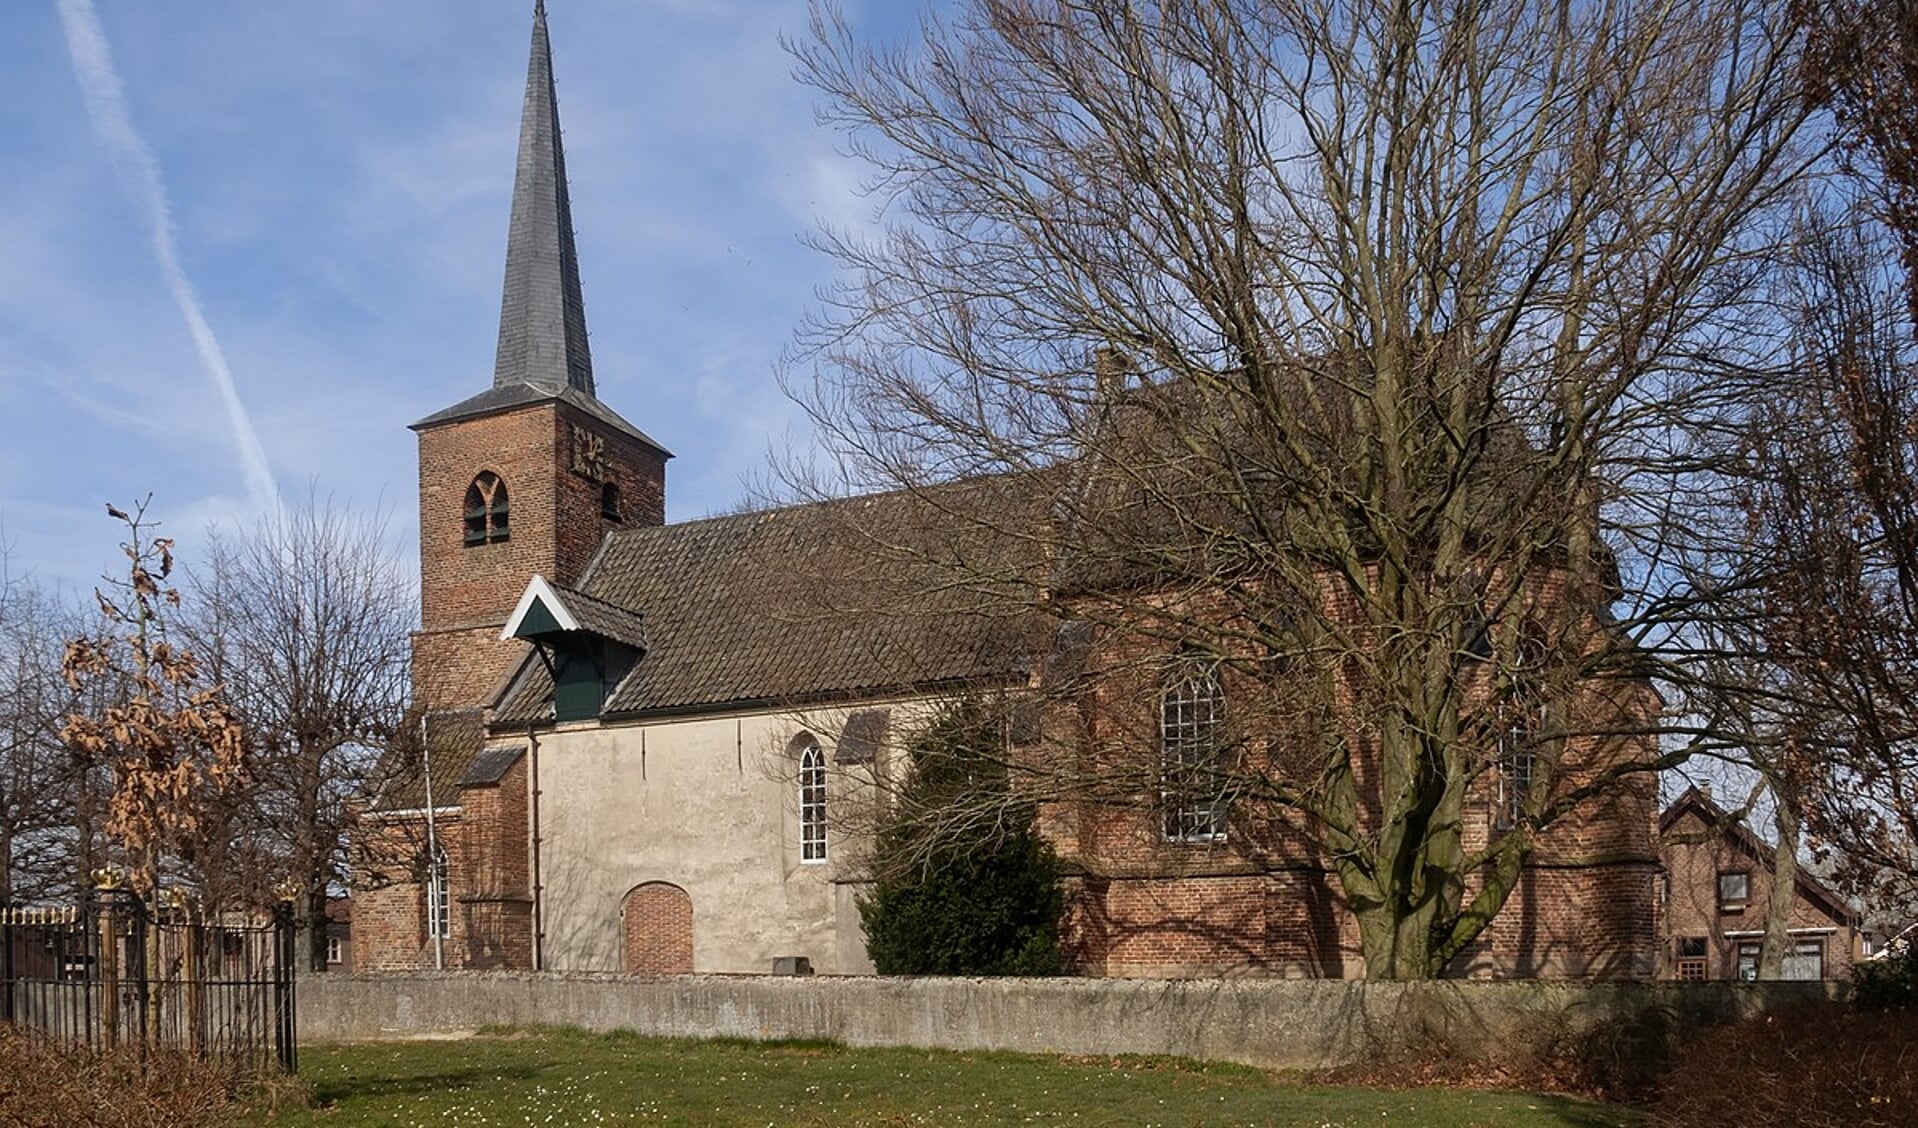 De Sint-Joriskerk in Heumen waar Pieter Blok in 1891 een omstreden rede hield.